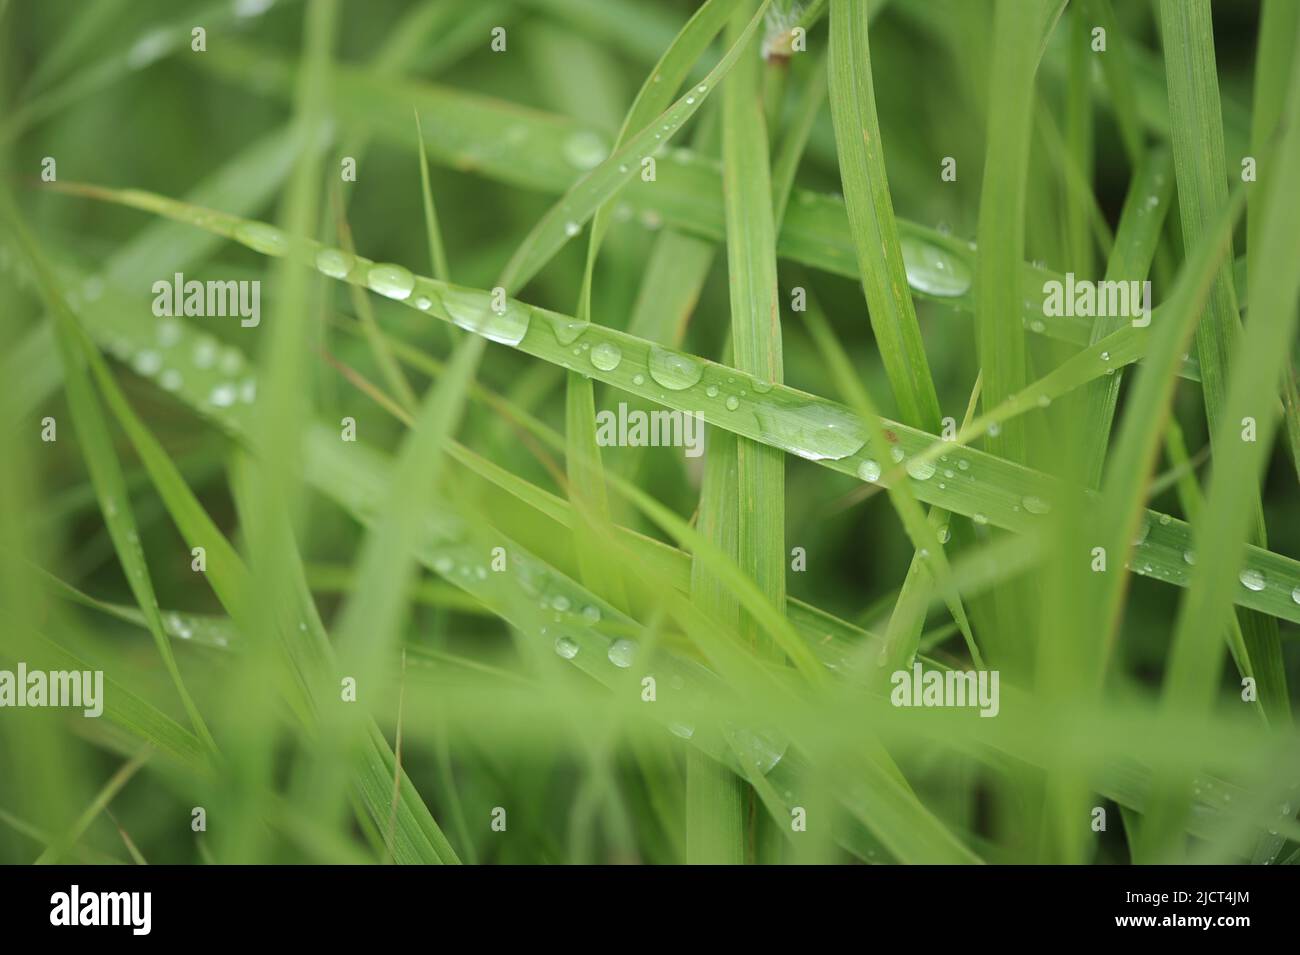 Mountain Province, Philippinen: Horizontale Makroaufnahme von Regentropfen auf grünen Grashalmen für Inhalte, Hintergründe und Kopierflächen mit Naturmotiven. Stockfoto